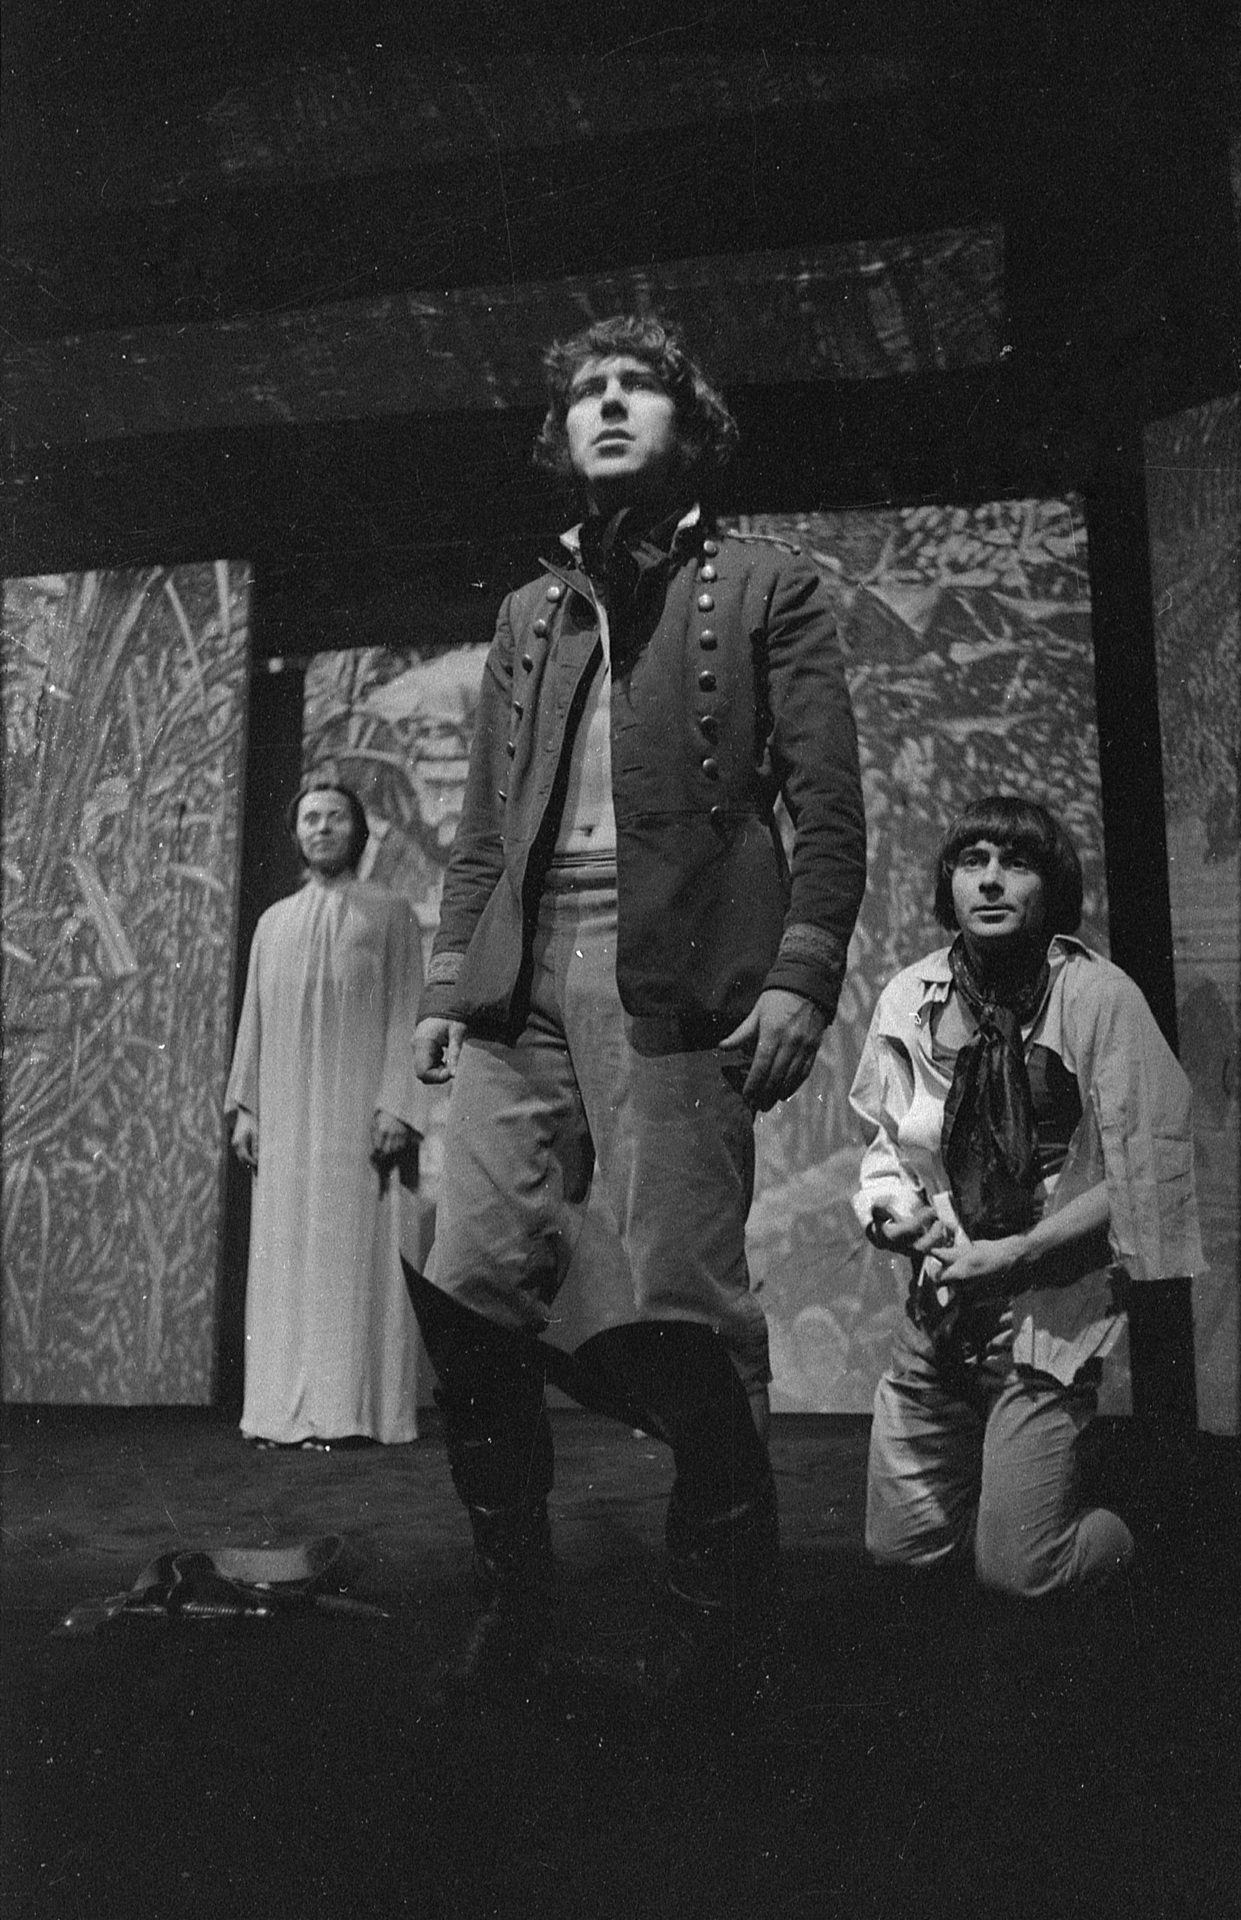 Candide_L_Mrkvicka. Voltaire: Candide
(režie Jaroslav Vostrý, 1971; s Josefem Abrhámem a Jiřím Hrzánem)
Foto Miloň Novotný